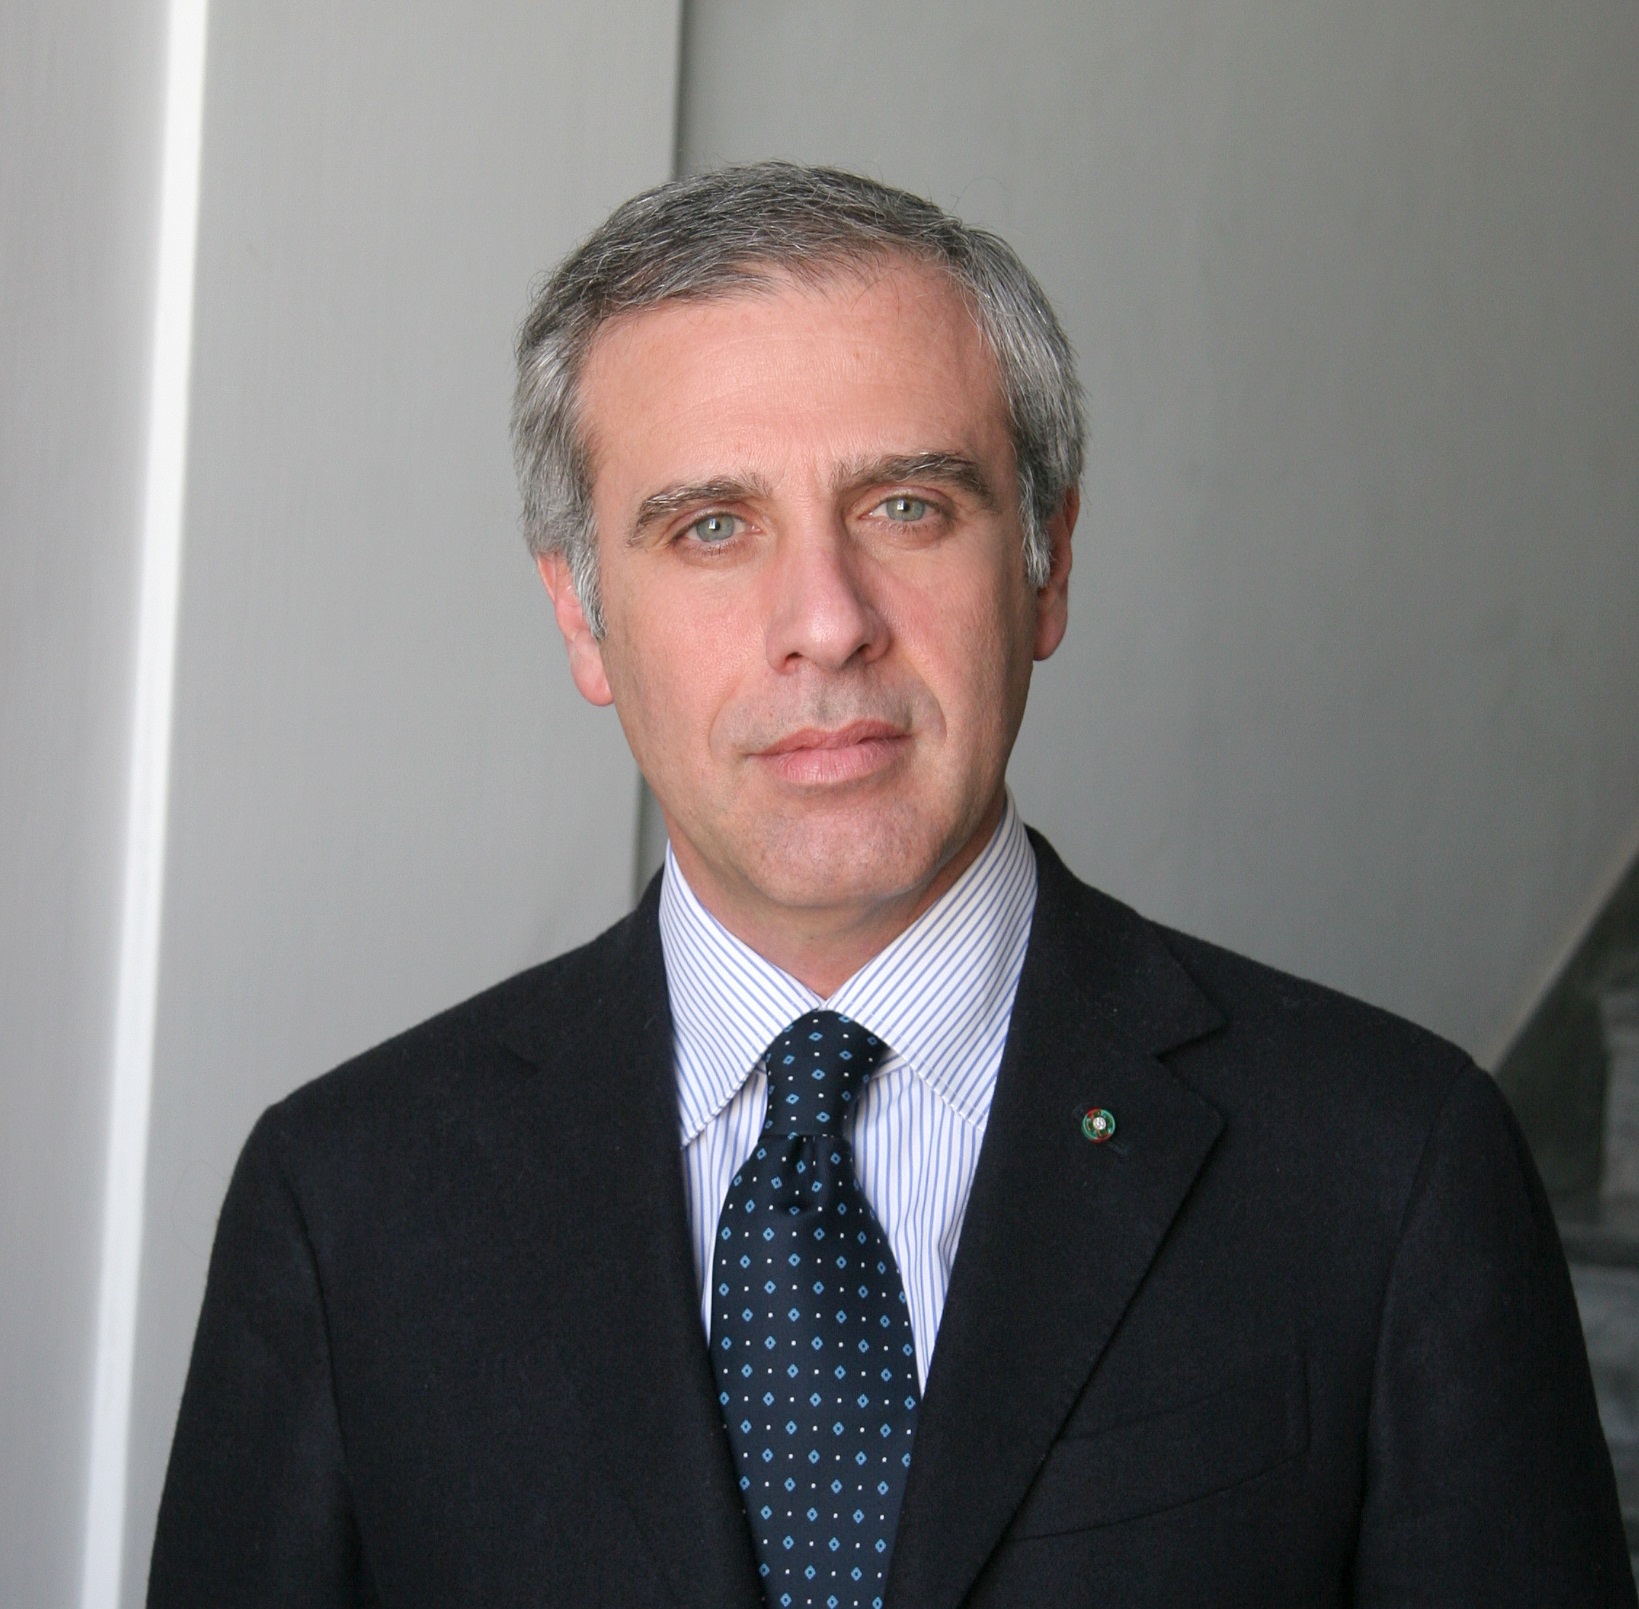 Paolo Scudieri